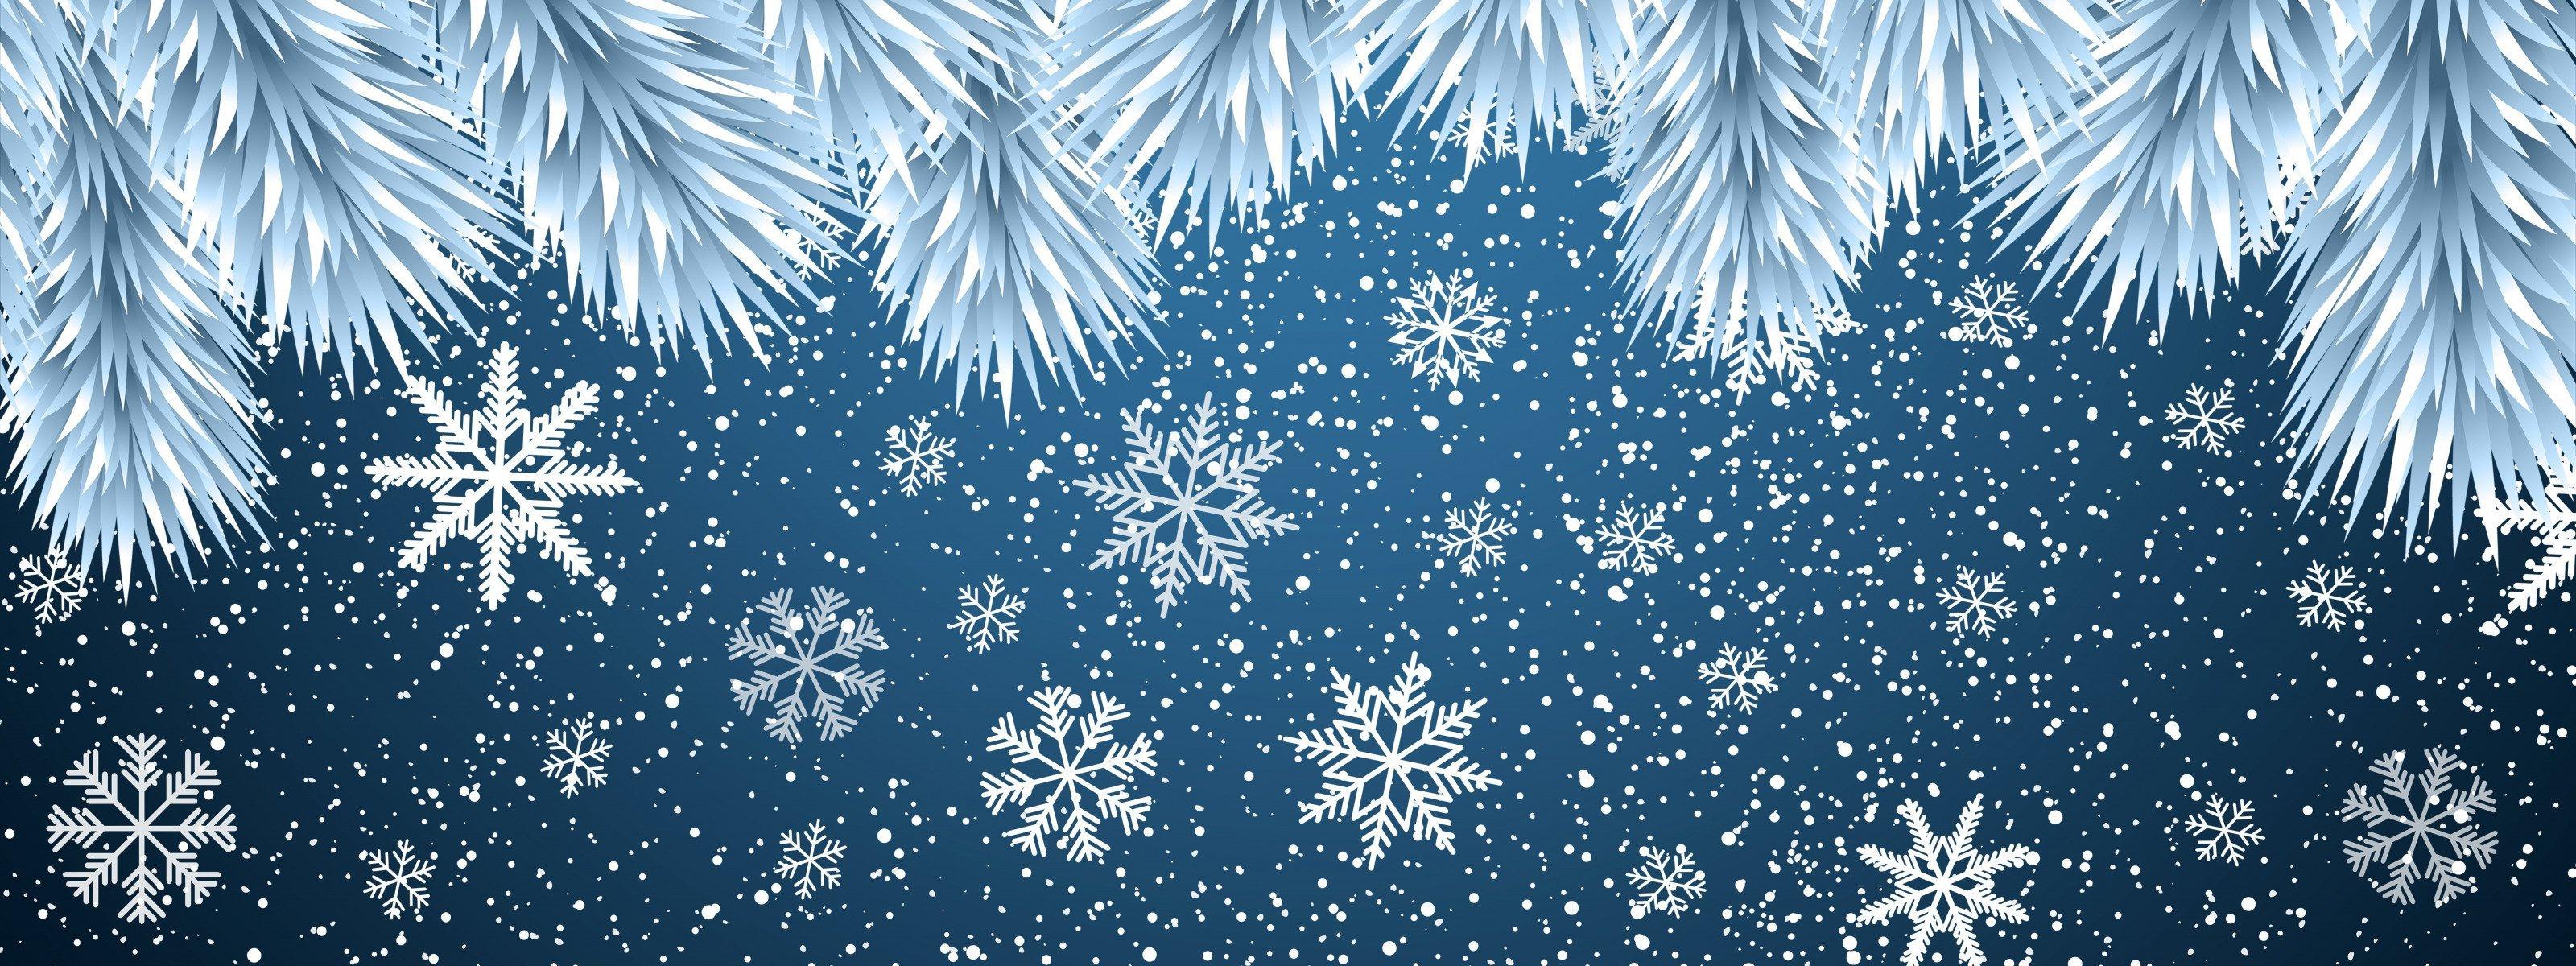 Снежинка Снег Зима - Бесплатное изображение на Pixabay - Pixabay